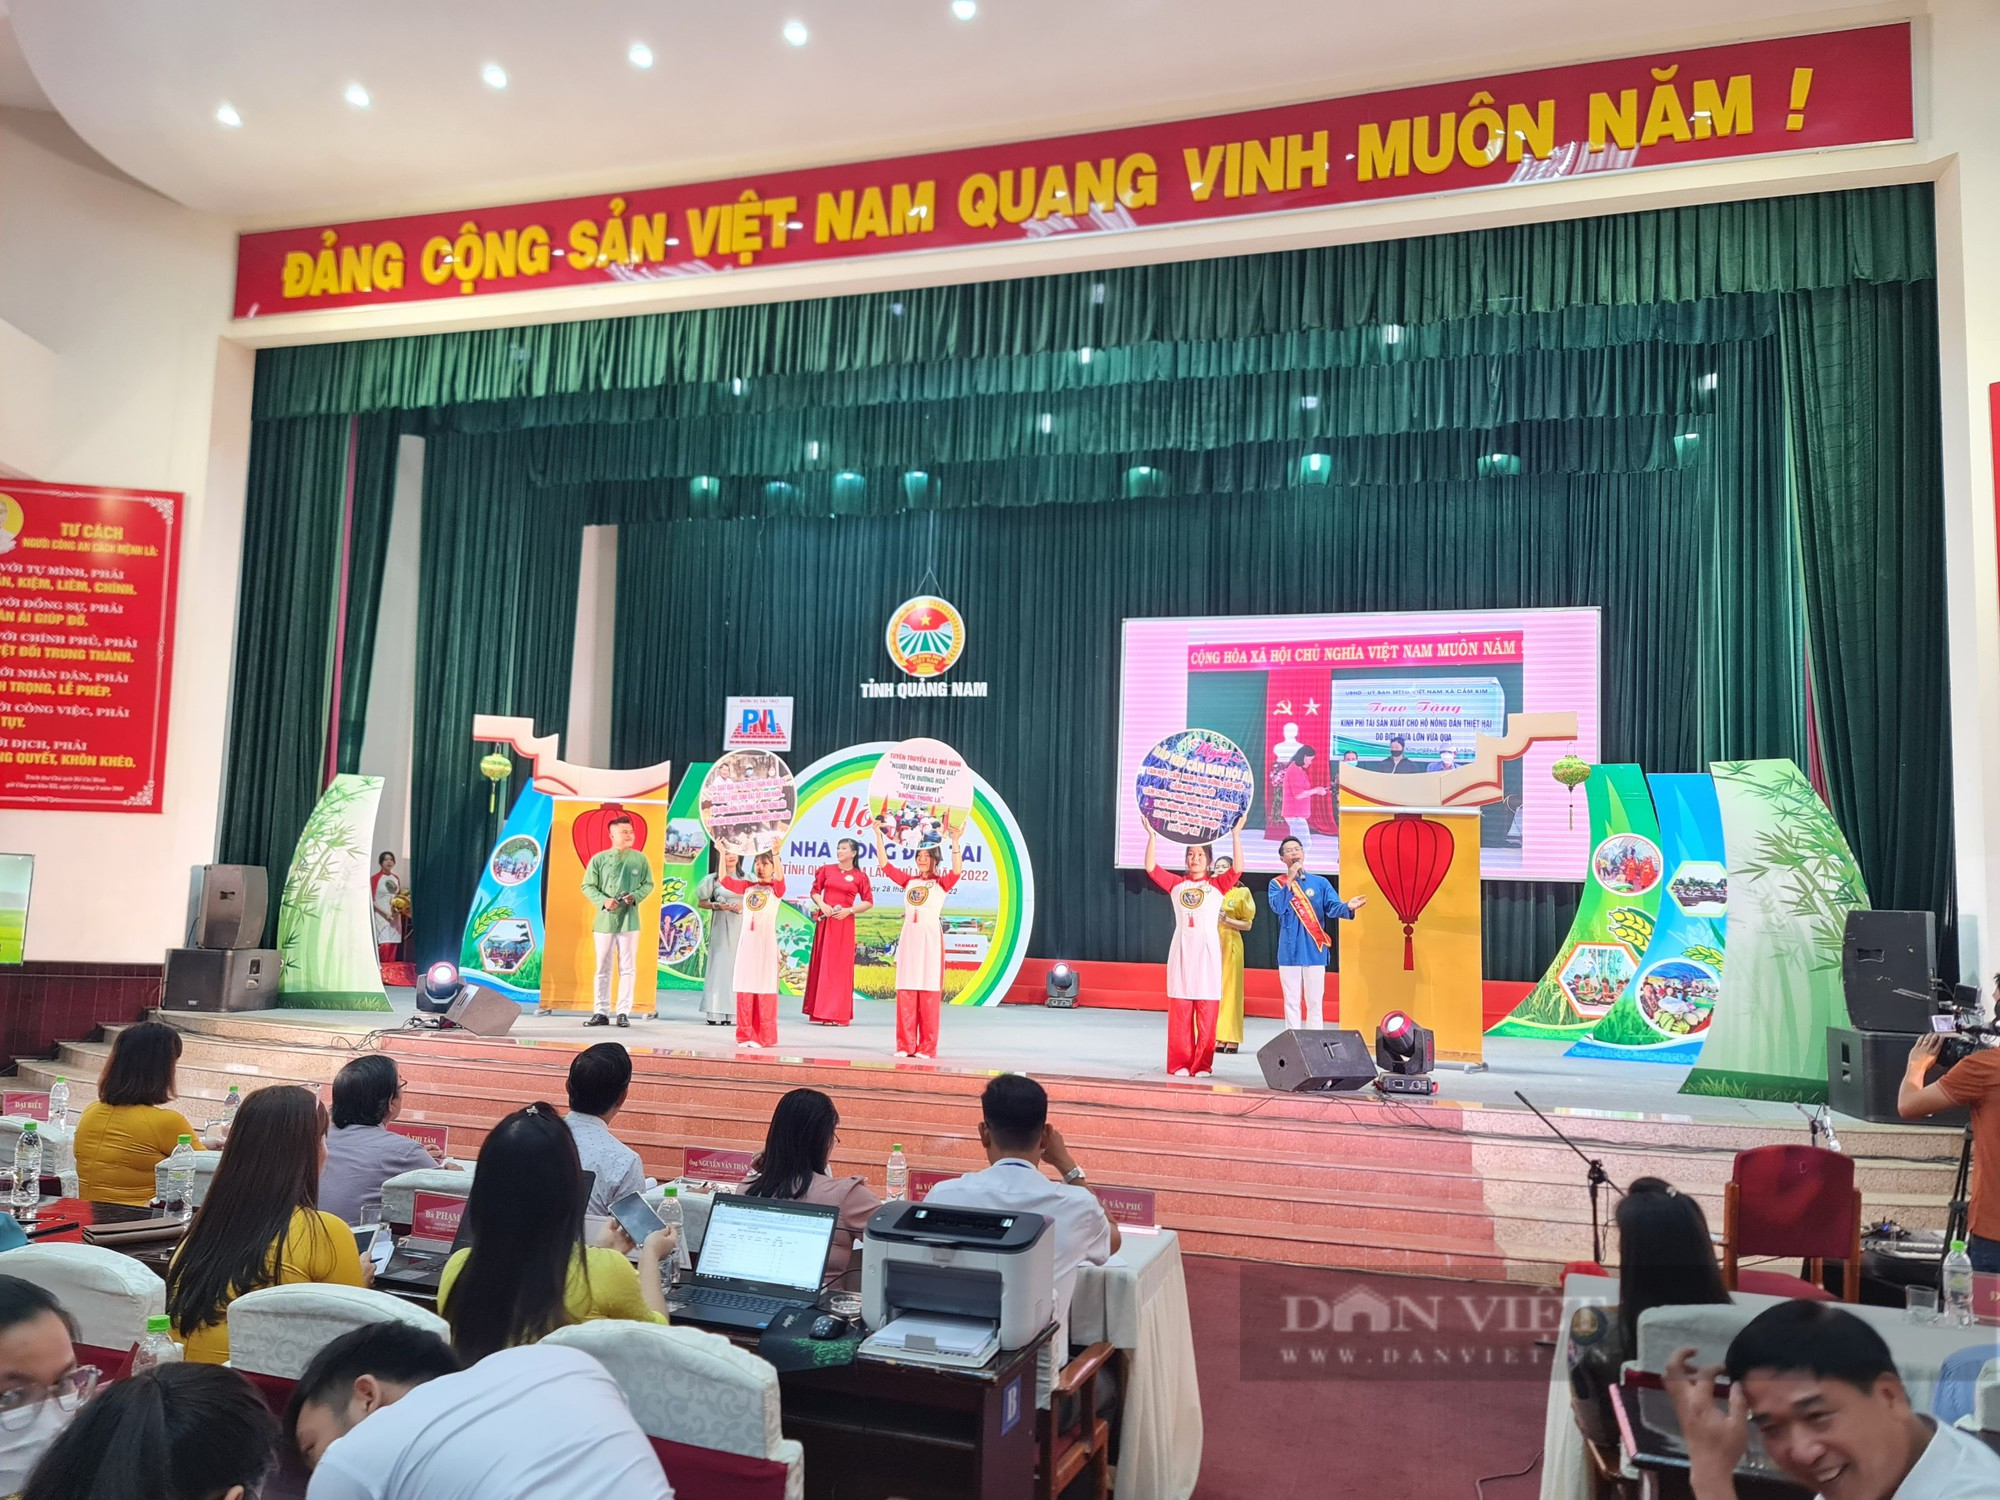 180 thí sinh nhà nông ở Quảng Nam tranh tài tại Hội thi nhà nông đua tài - Ảnh 8.